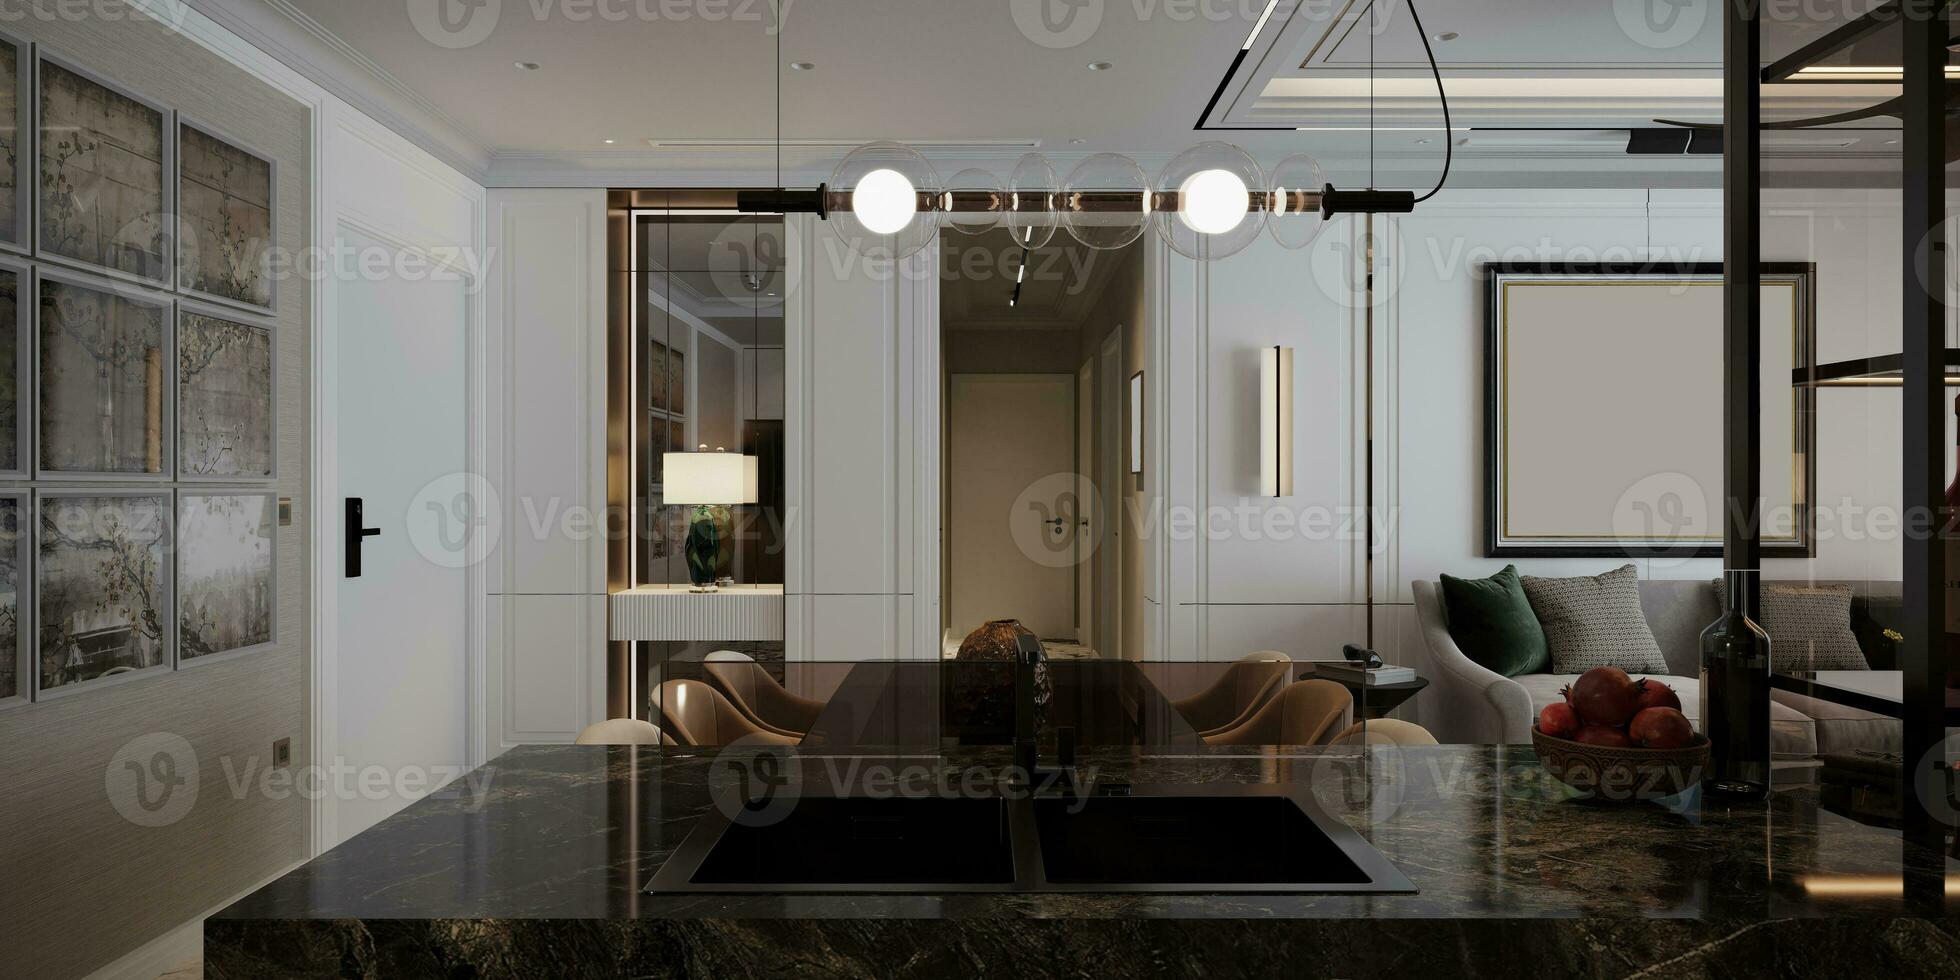 kök och modern interiör design med möbel och eleganta svart kakel, vägg måla 3d tolkning foto